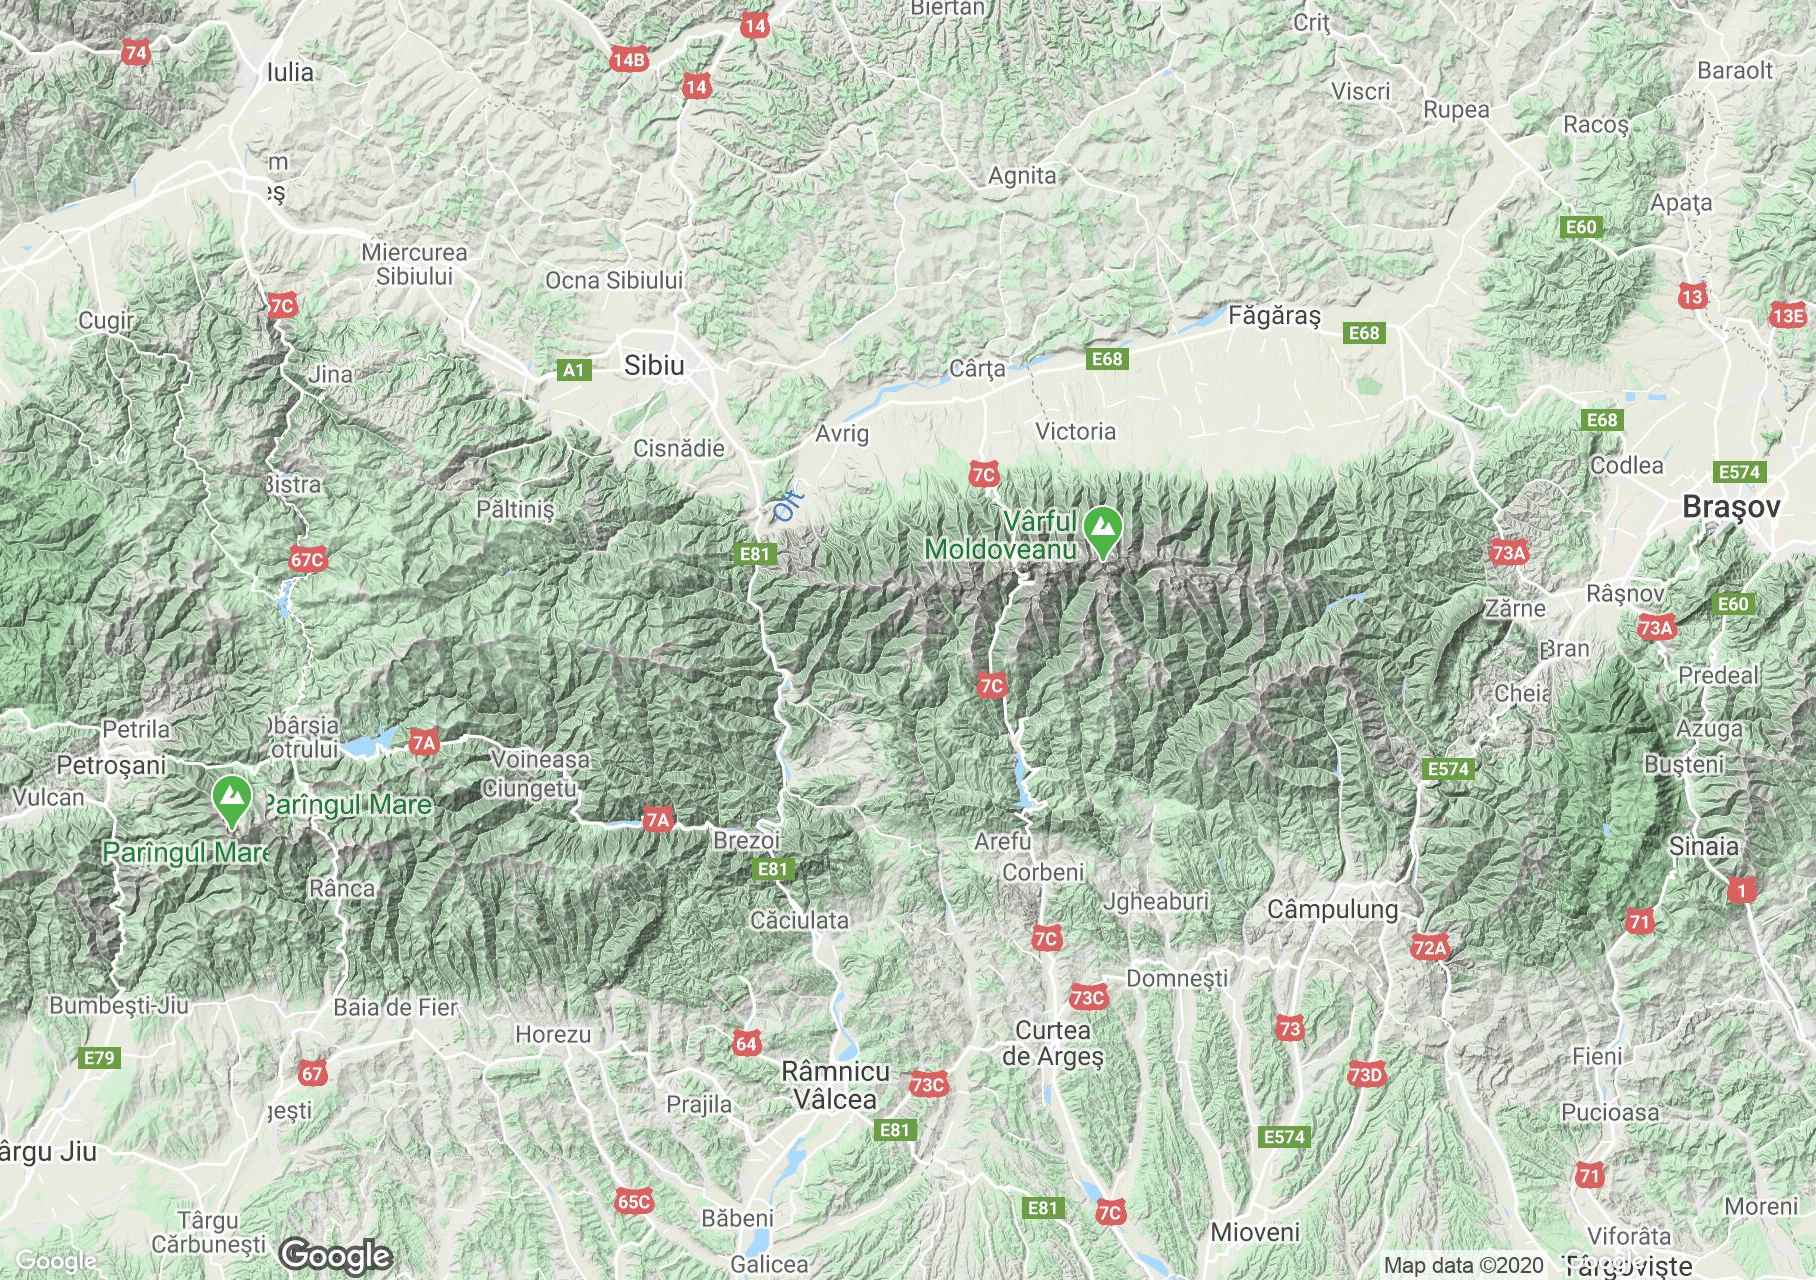 South Carpathians, Interactive tourist map